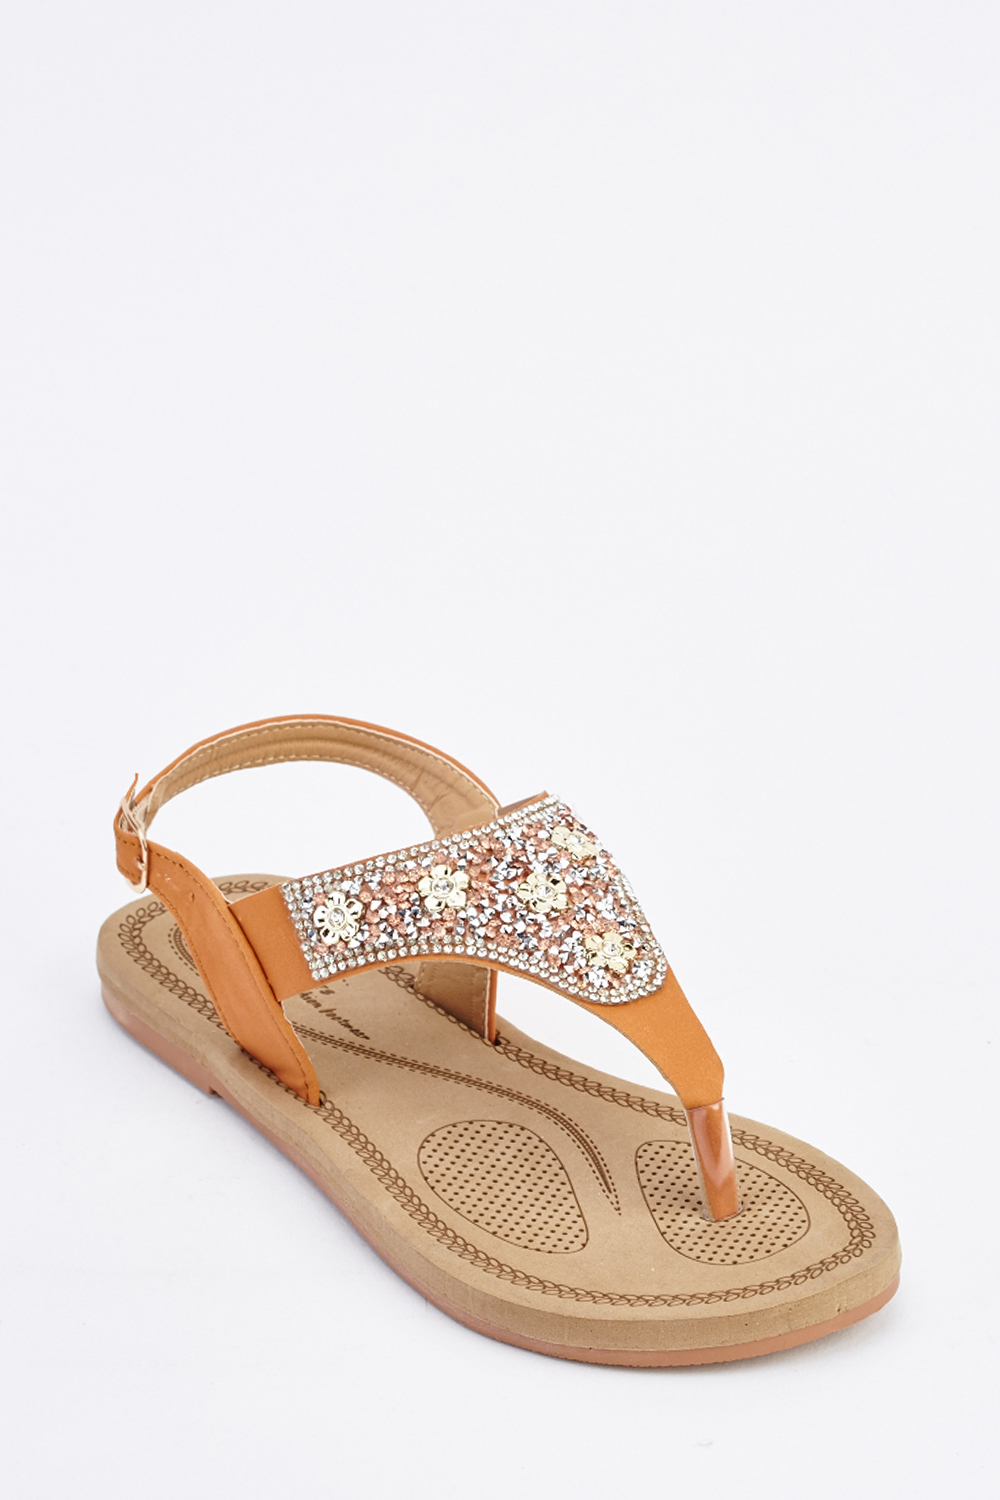 Embellished Tan Flip Flops - Just $7